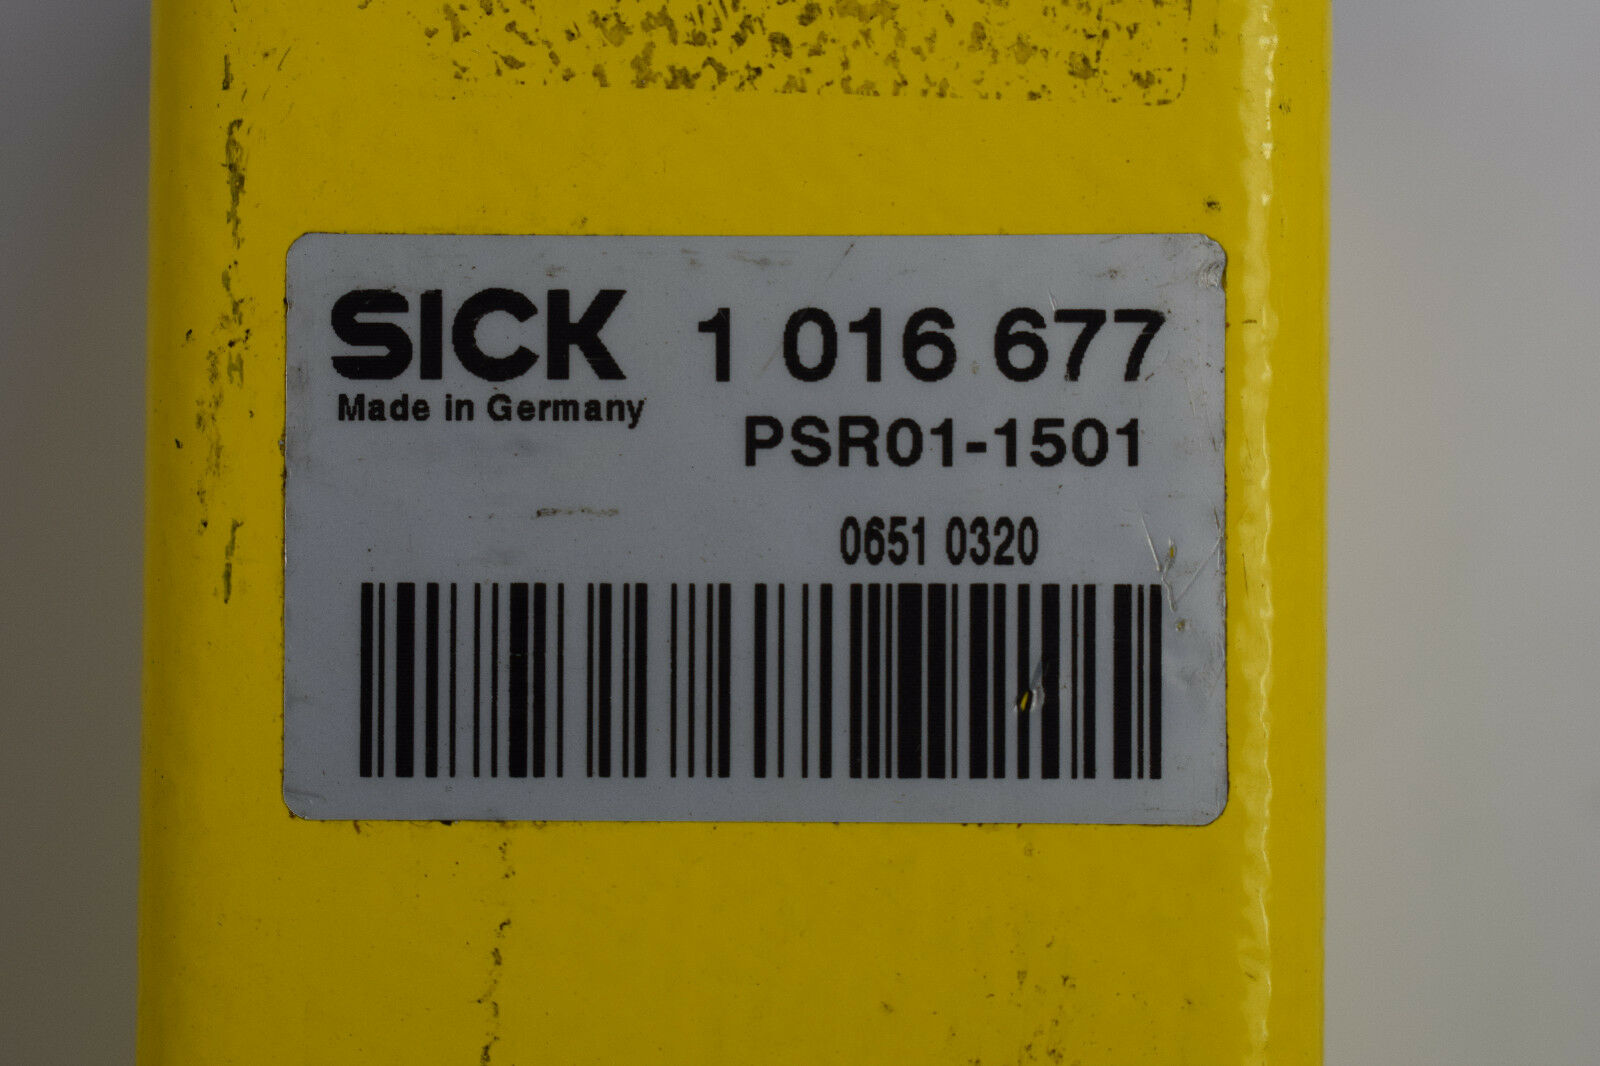 Sick M 2000 Lichtschranke PSR01-1501 